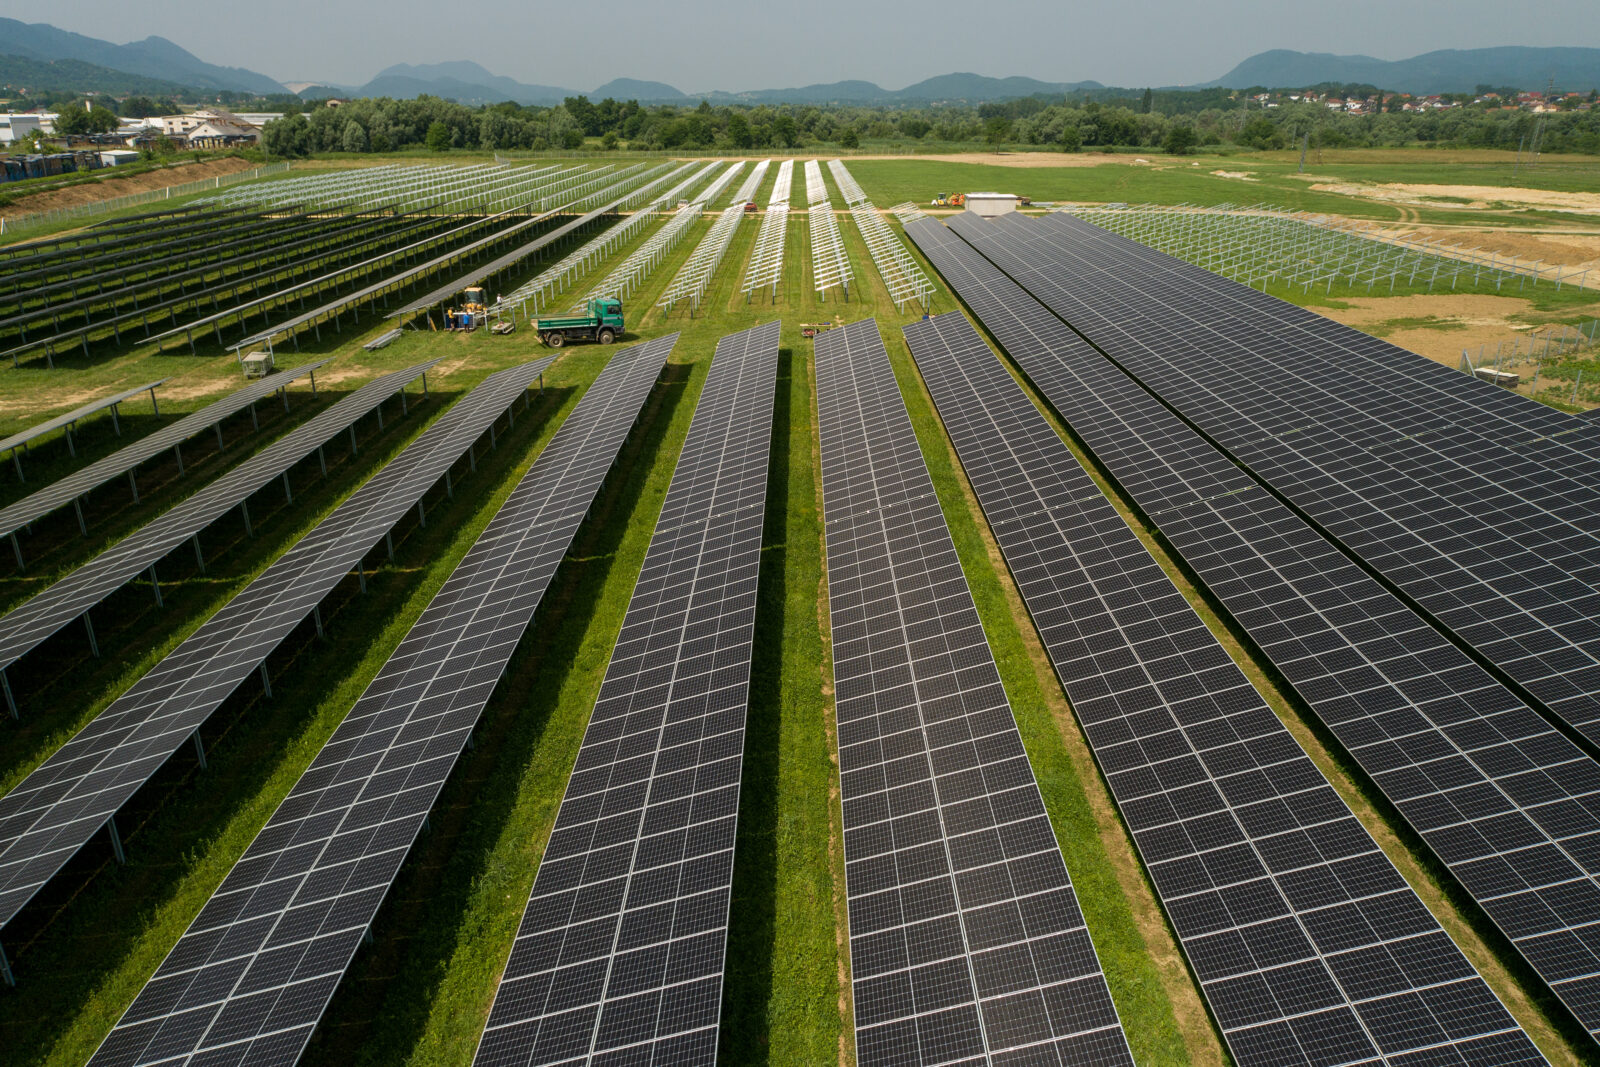 Kod Ivanca se gradi prva agrosolarna elektrana u Hrvatskoj, proizvodit će zelenu energiju i ekološku hranu